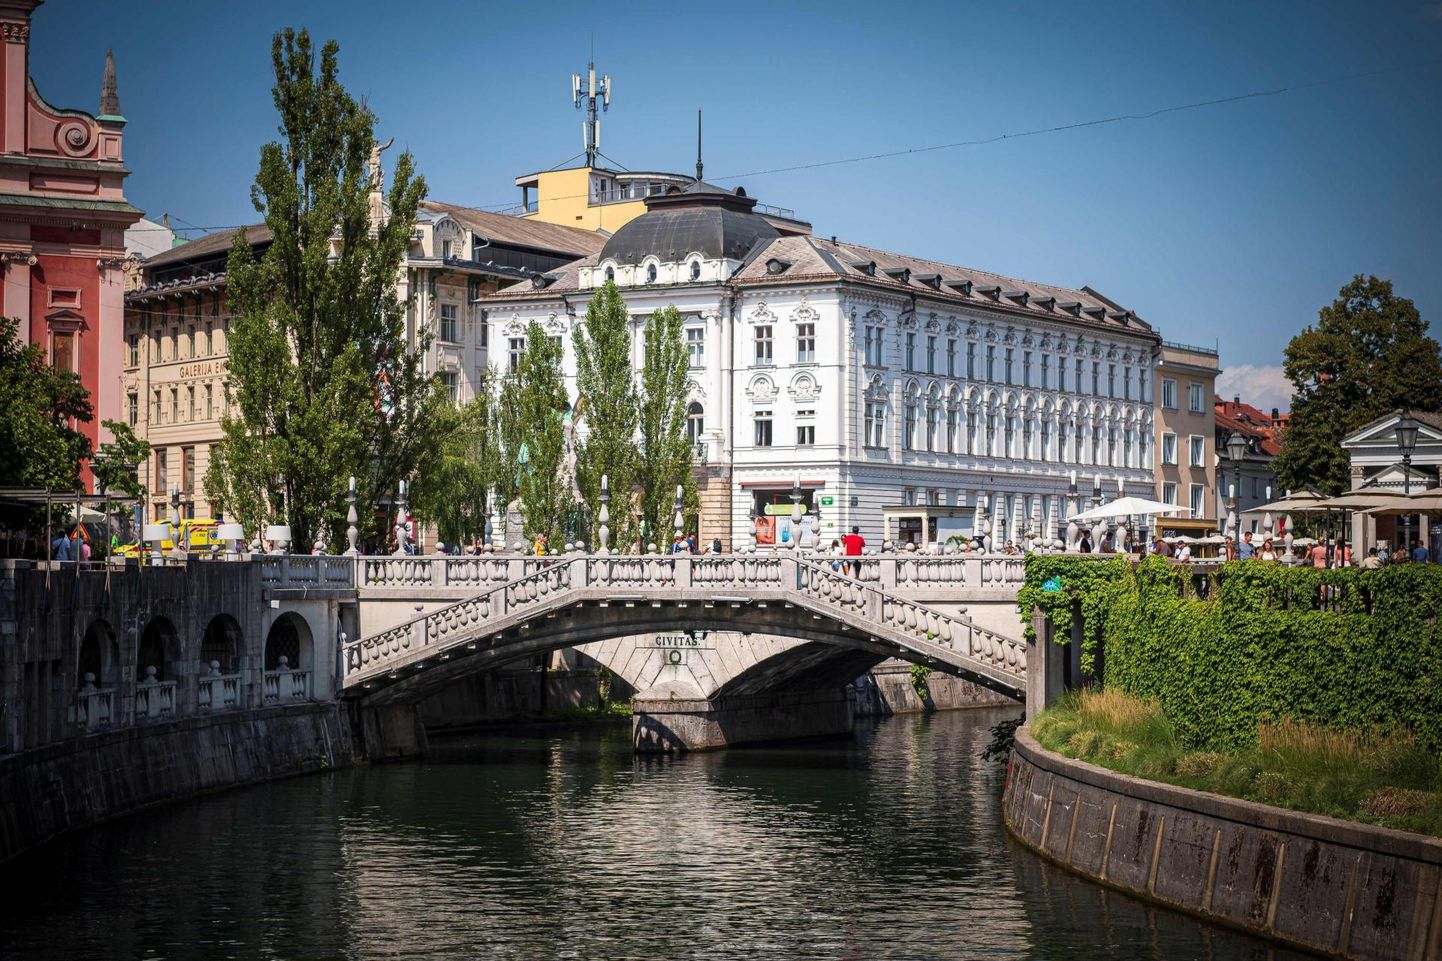 Arhitekt Jože Plečniki loodud sillad Ljubljana kesklinnas. UNESCO otsustas võtta tema loomingu Sloveenia pealinnas kaitse alla. 